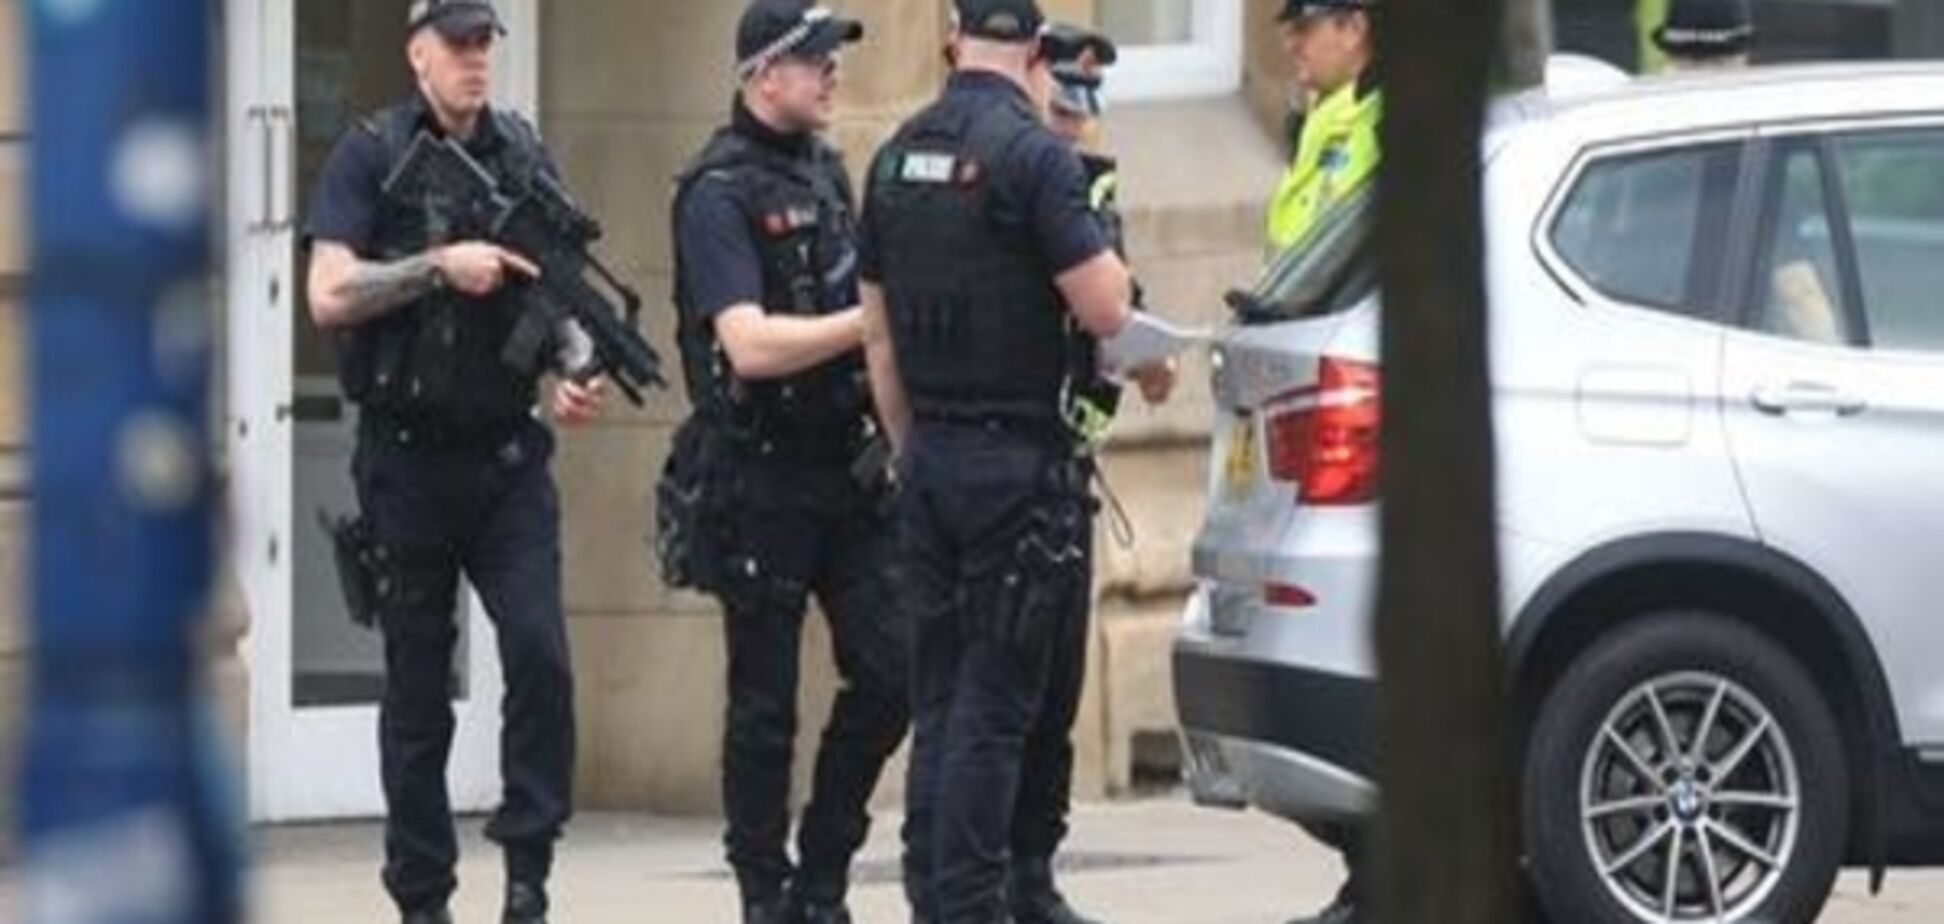 Відповідальність за теракт у Манчестері взяла на себе ІД